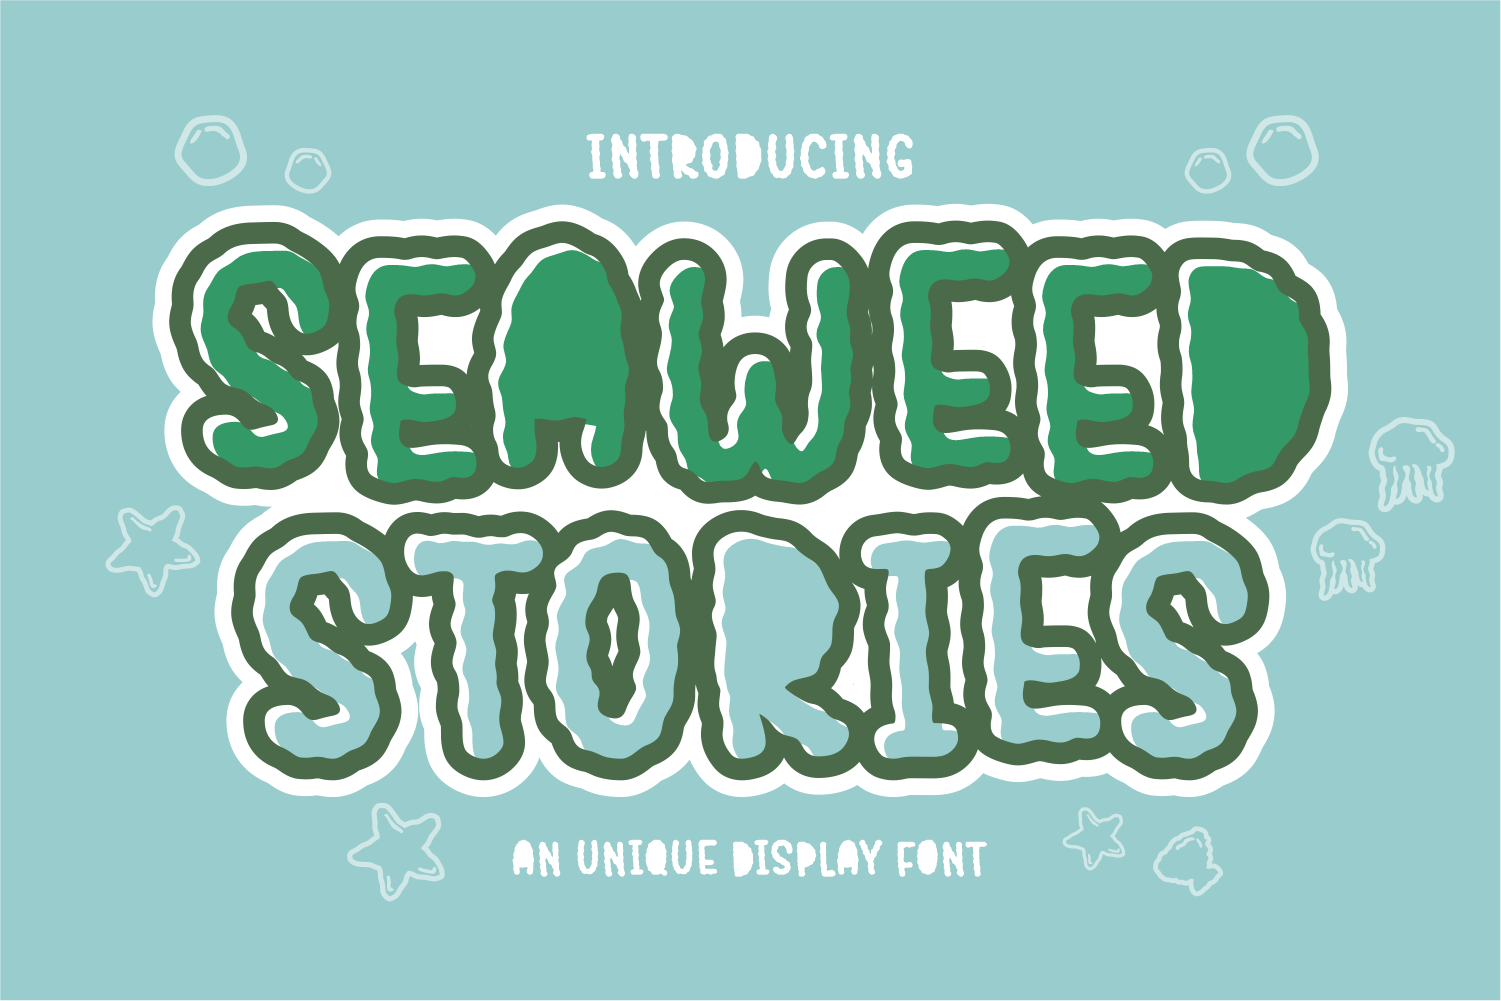 Seaweed Stories